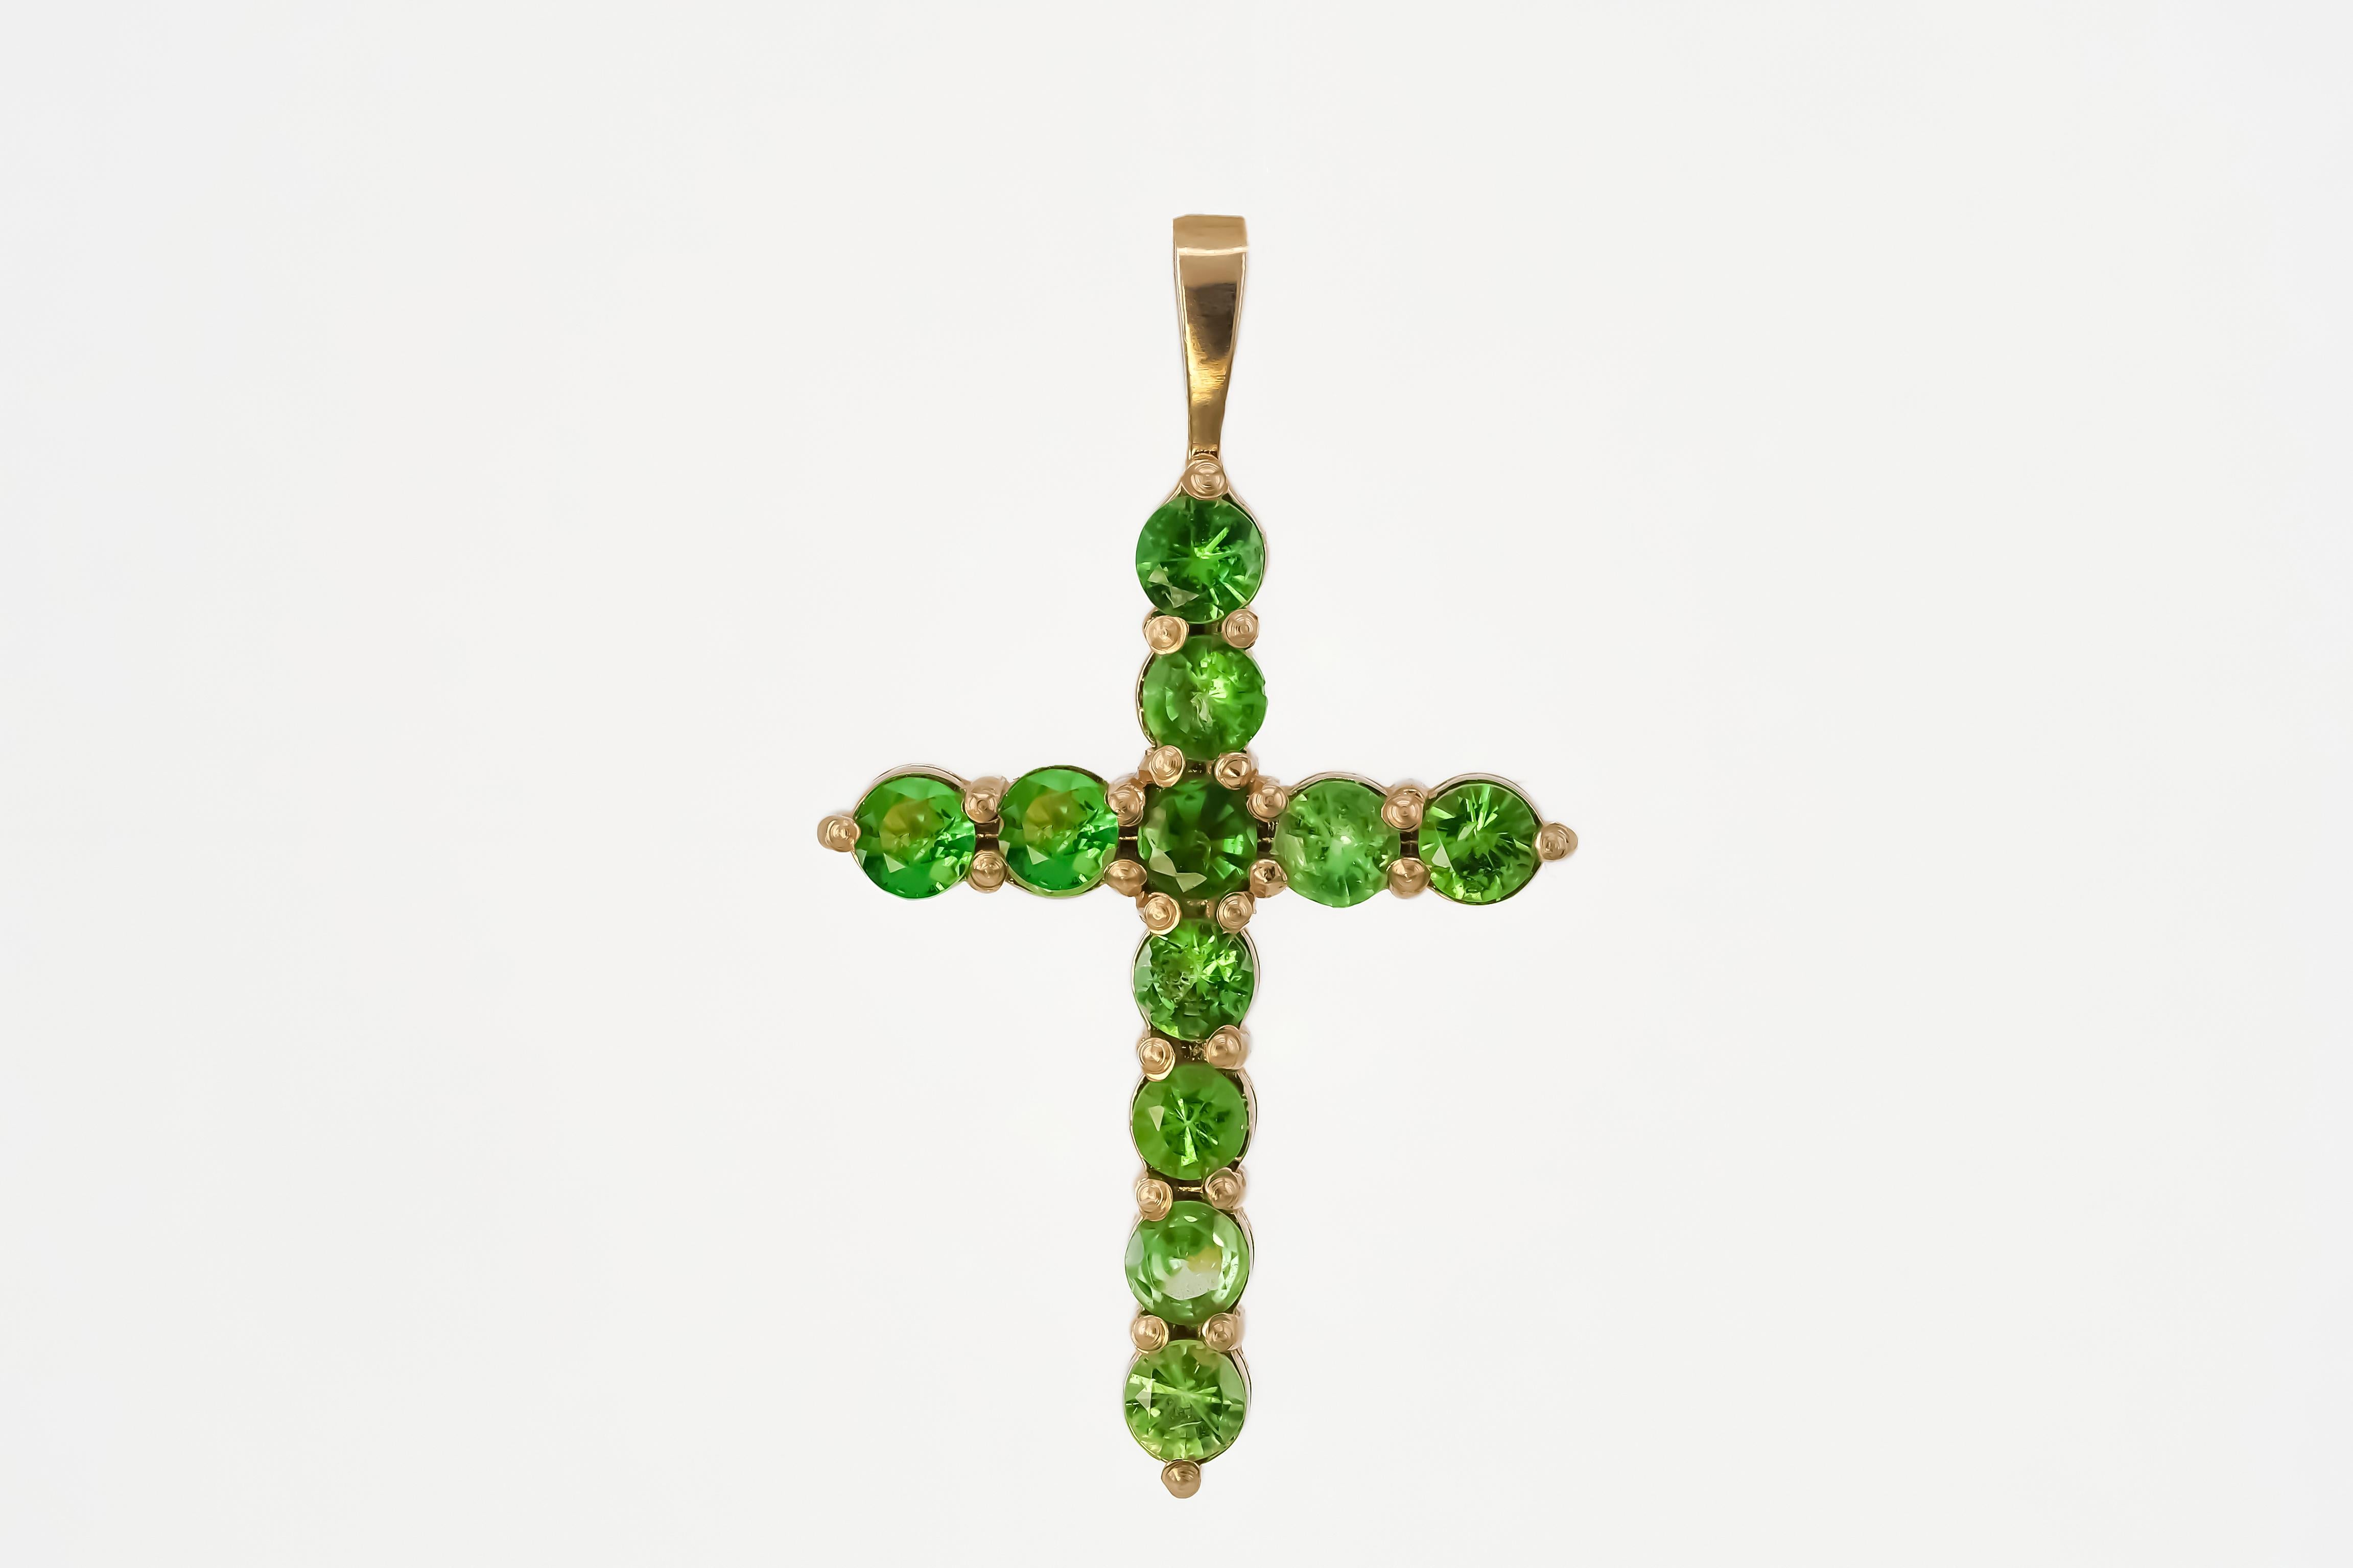 Tsavorite cross pendant. Gold cross pendant. Green garnet cross pendant in 14k gold. Gold cross pendant with tsavorites

Weight: 1.2 g.
Gold - 14k gold 
Size: 23.4x14 mm 
Stones:
Set with tsavorites, color - green
Round cut, aprox 0.88 ct. in total